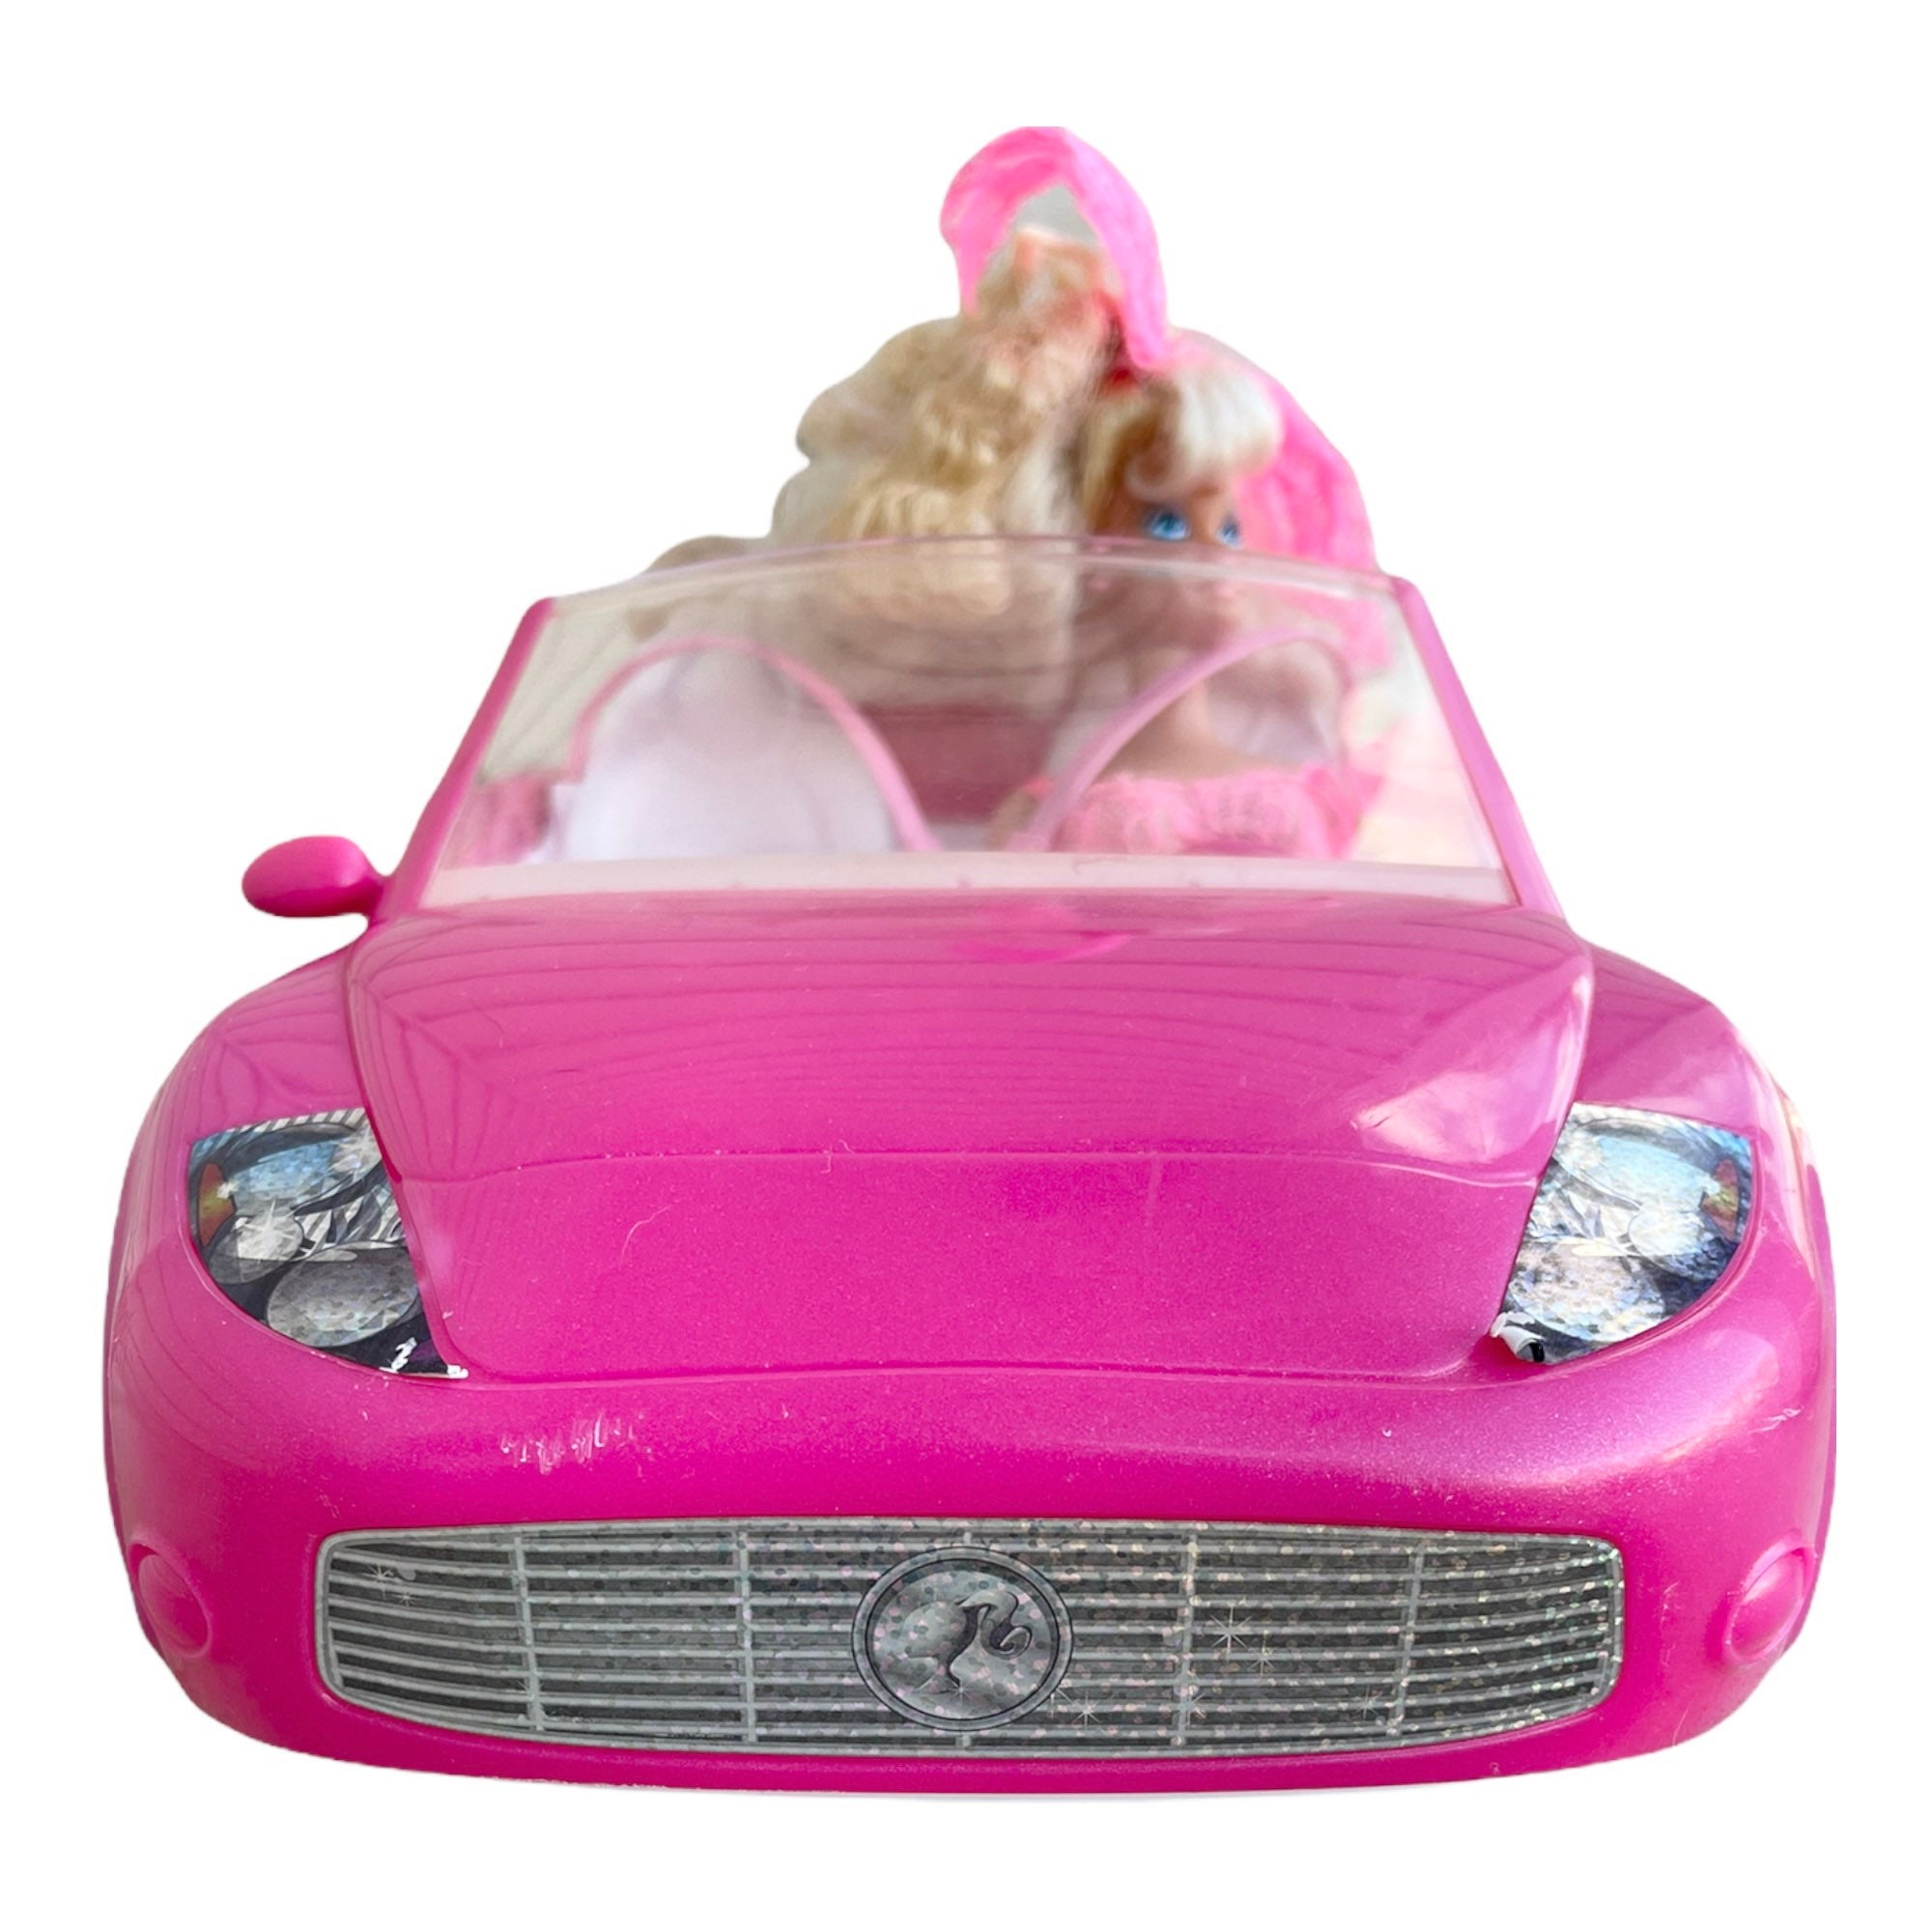 2010 Mattel Barbie Glam Rose Voiture de Sport Cabriolet, Retraité